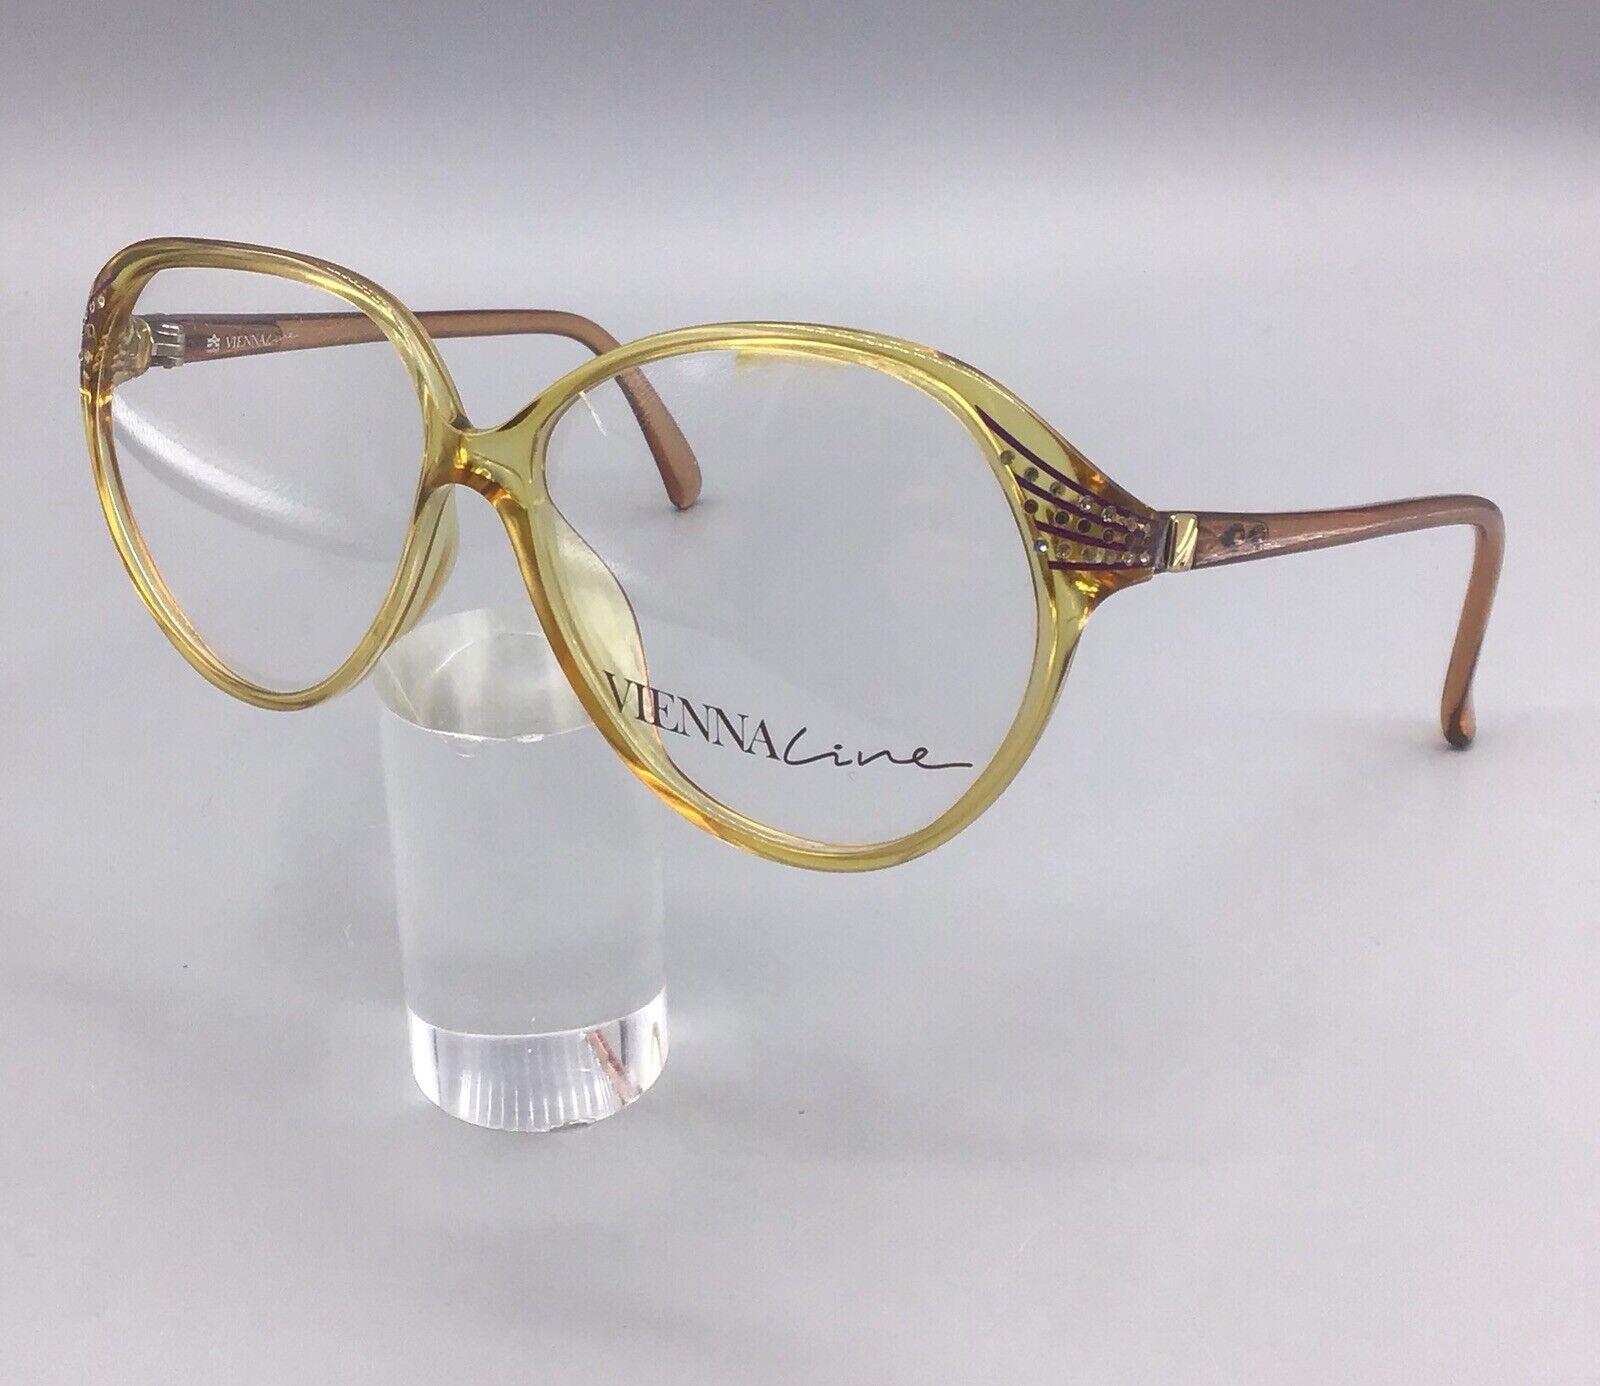 Viennaline frame eyewear made Austria 1487 occhiale vintage brillen lunettes